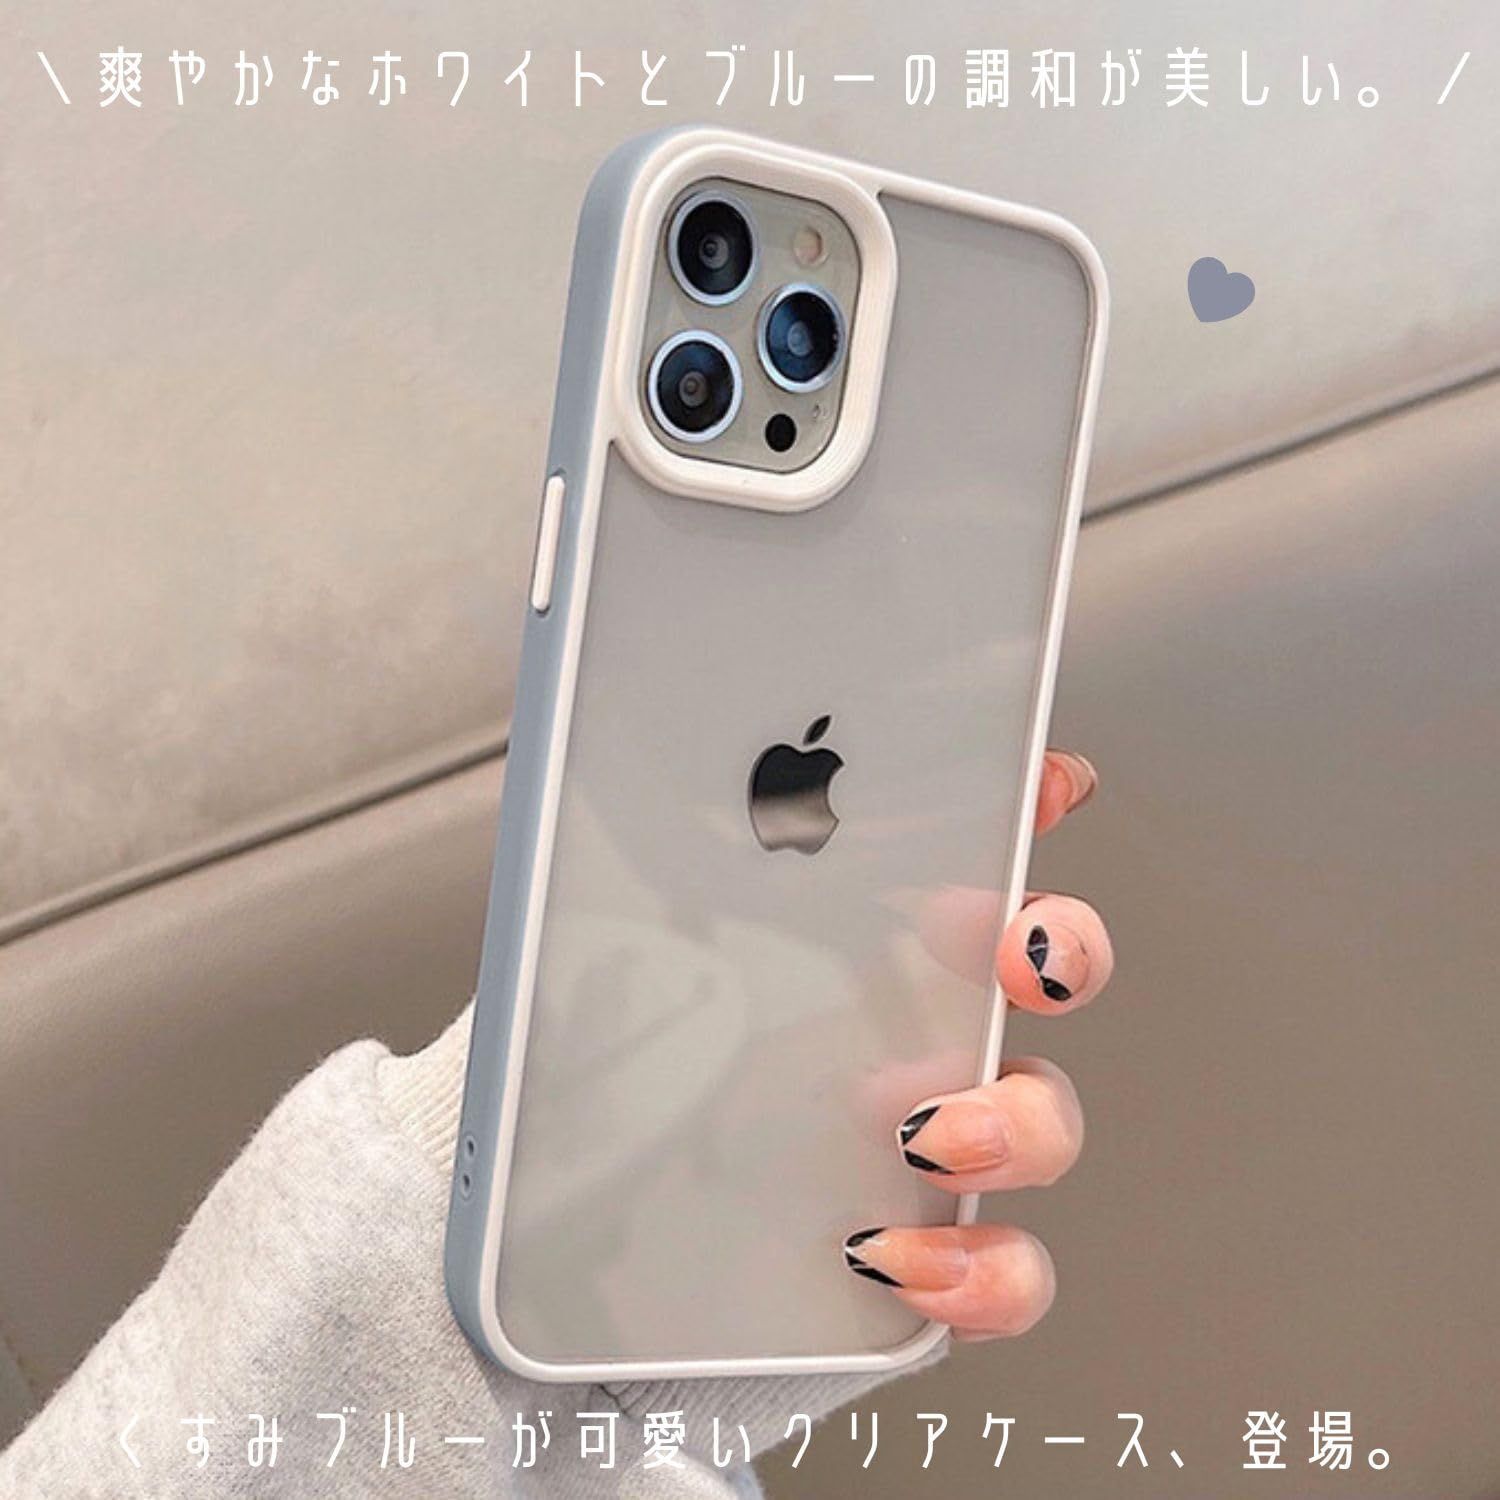 saymi's iPhoneケース クリア 透明 おしゃれ 韓国 シンプル スマ